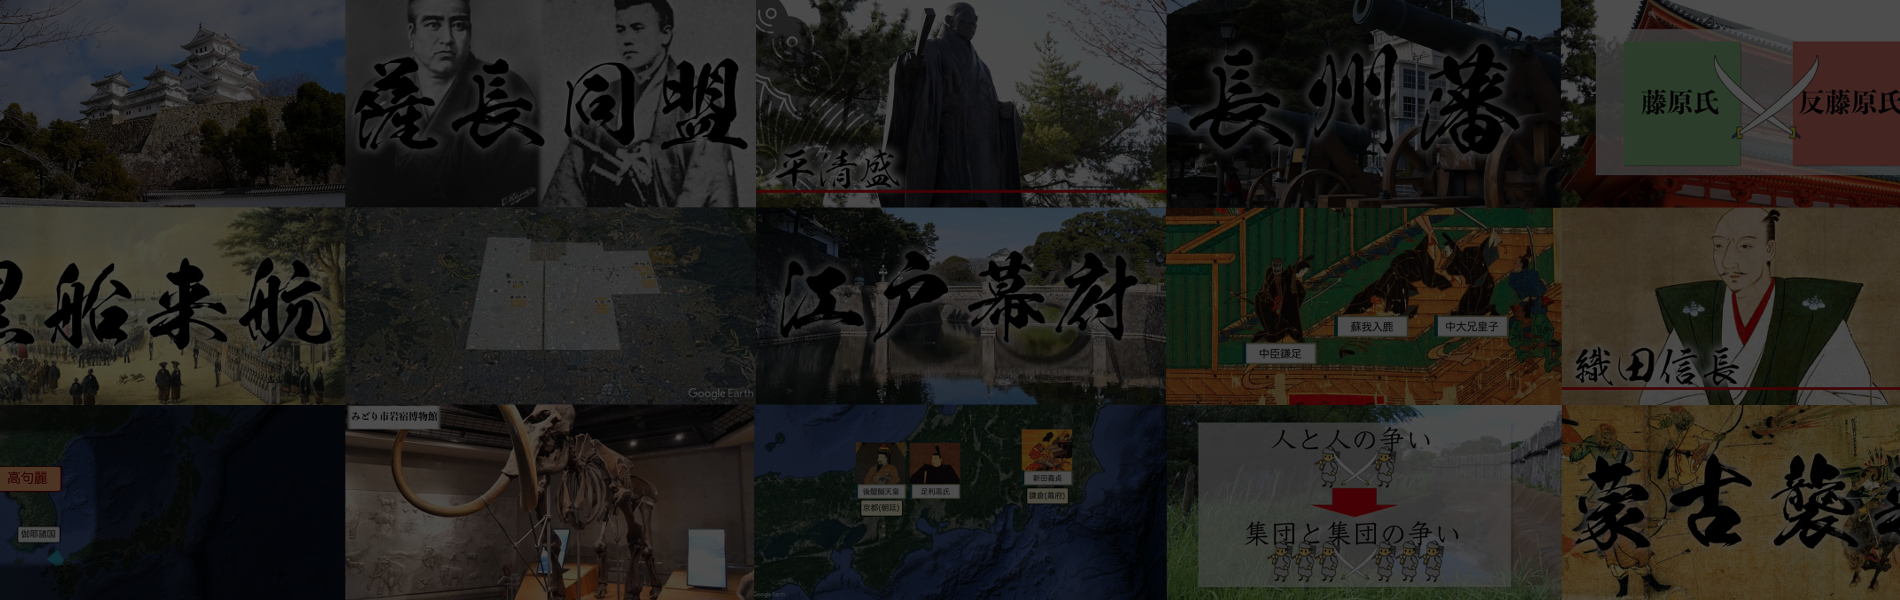 現地映像や地図を活用した見て覚える日本史